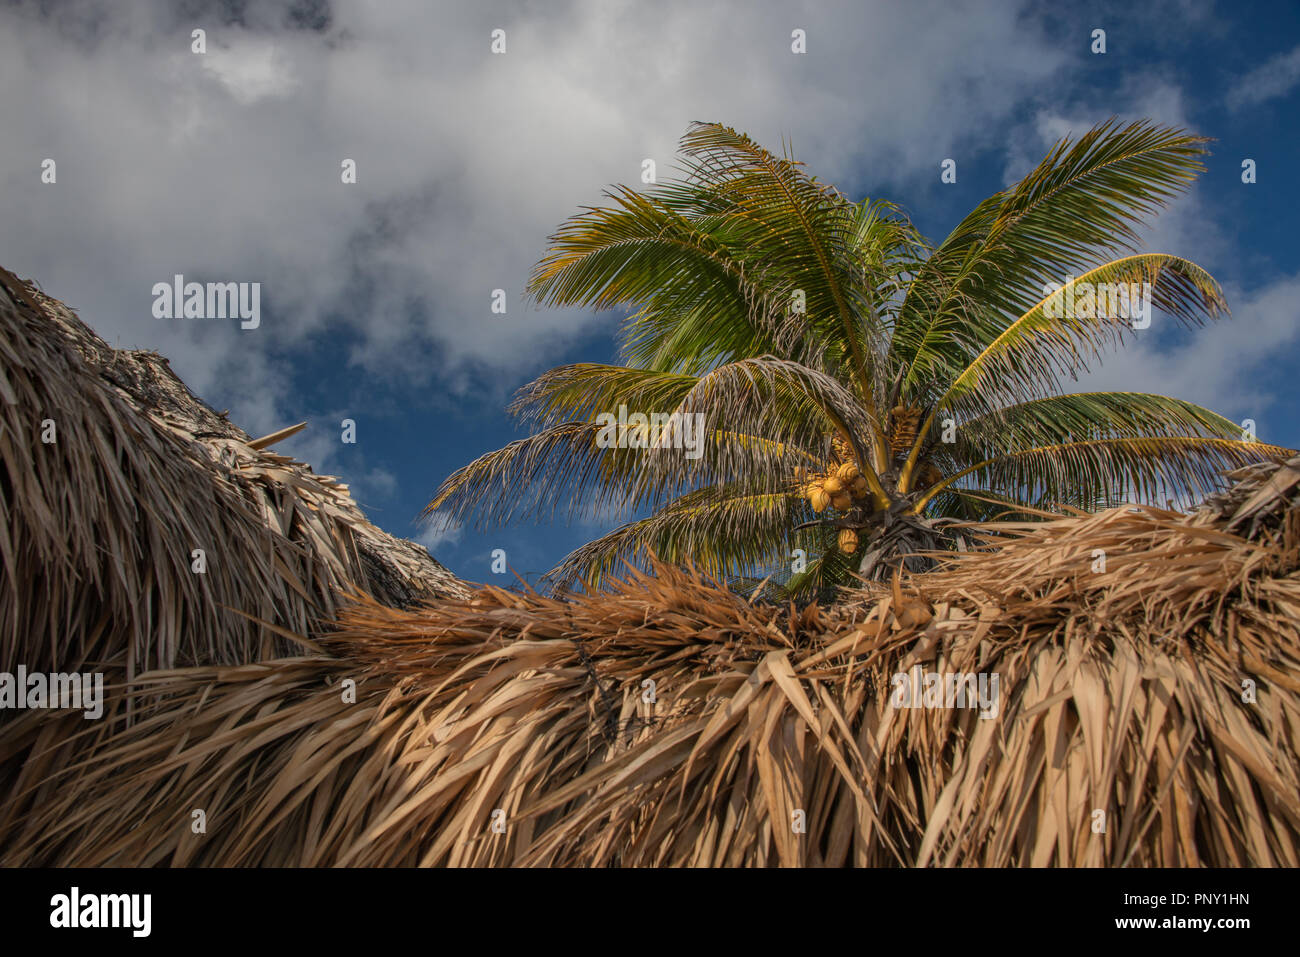 Cocotier au-dessus d'un toit de chaume d'une palapa sur un beau jour dans la péninsule du Yucatan au Mexique Banque D'Images